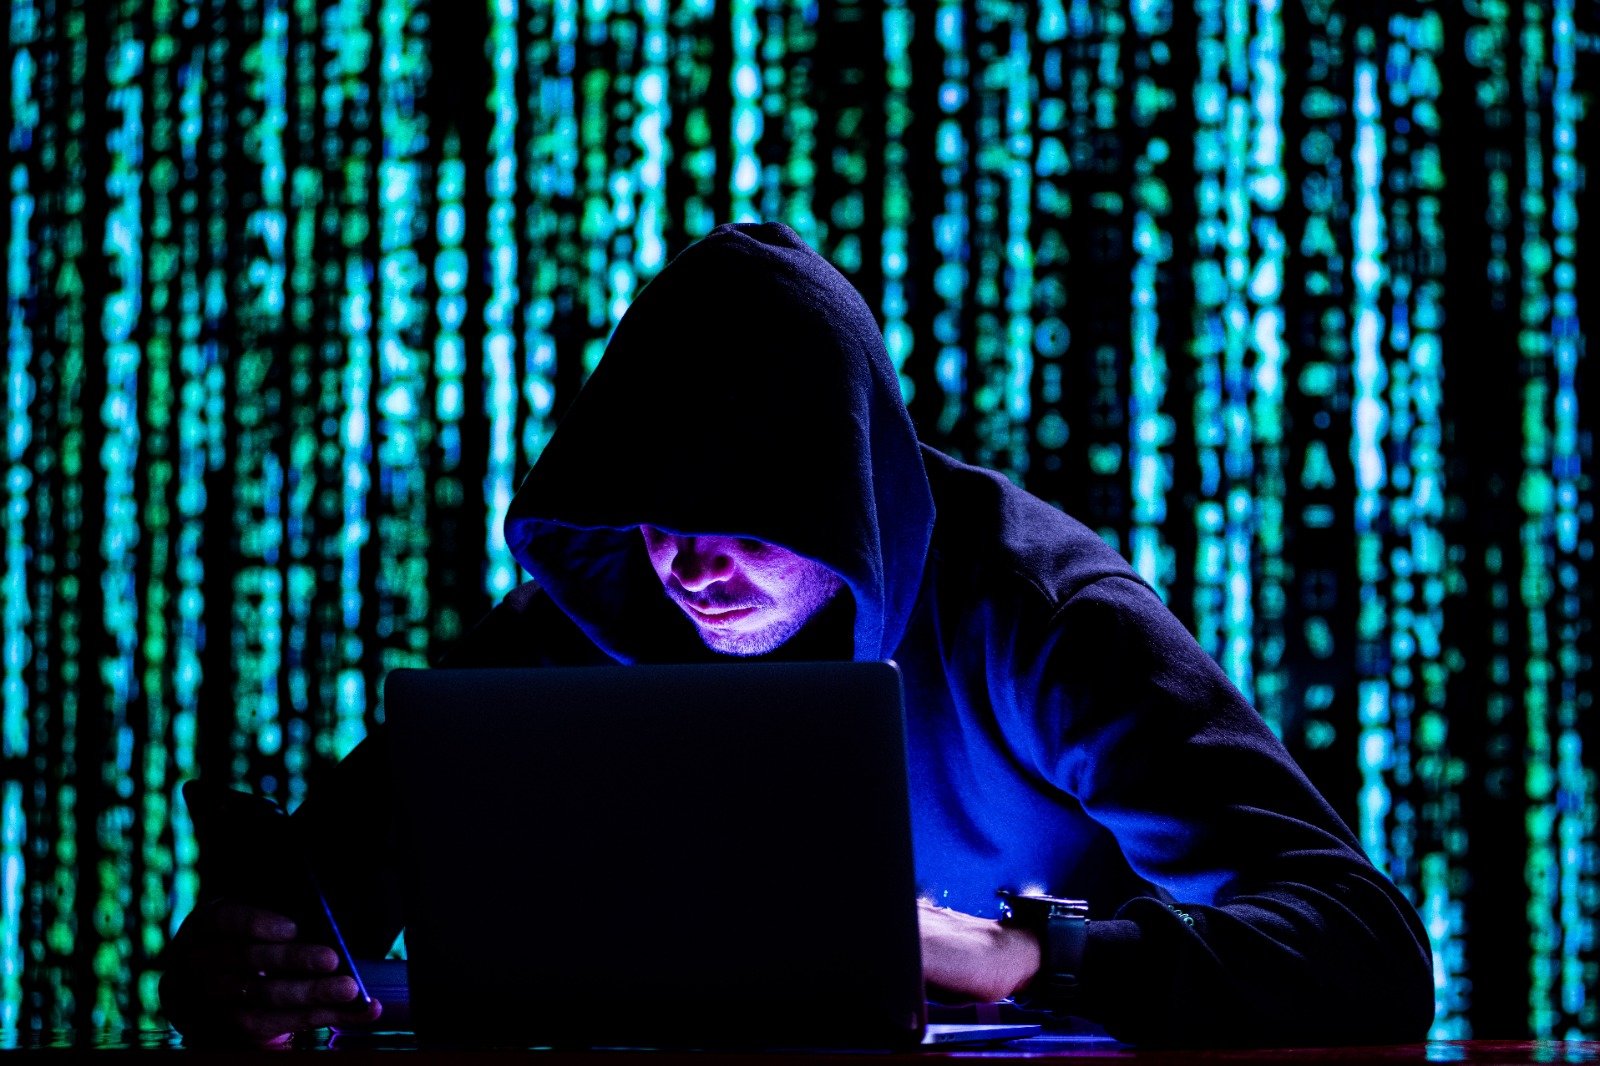 Hacker ataque - Ataques na internet, hackers, rede de sistemas, violações de dados sigilosos, documentos expostos, ciberataque5